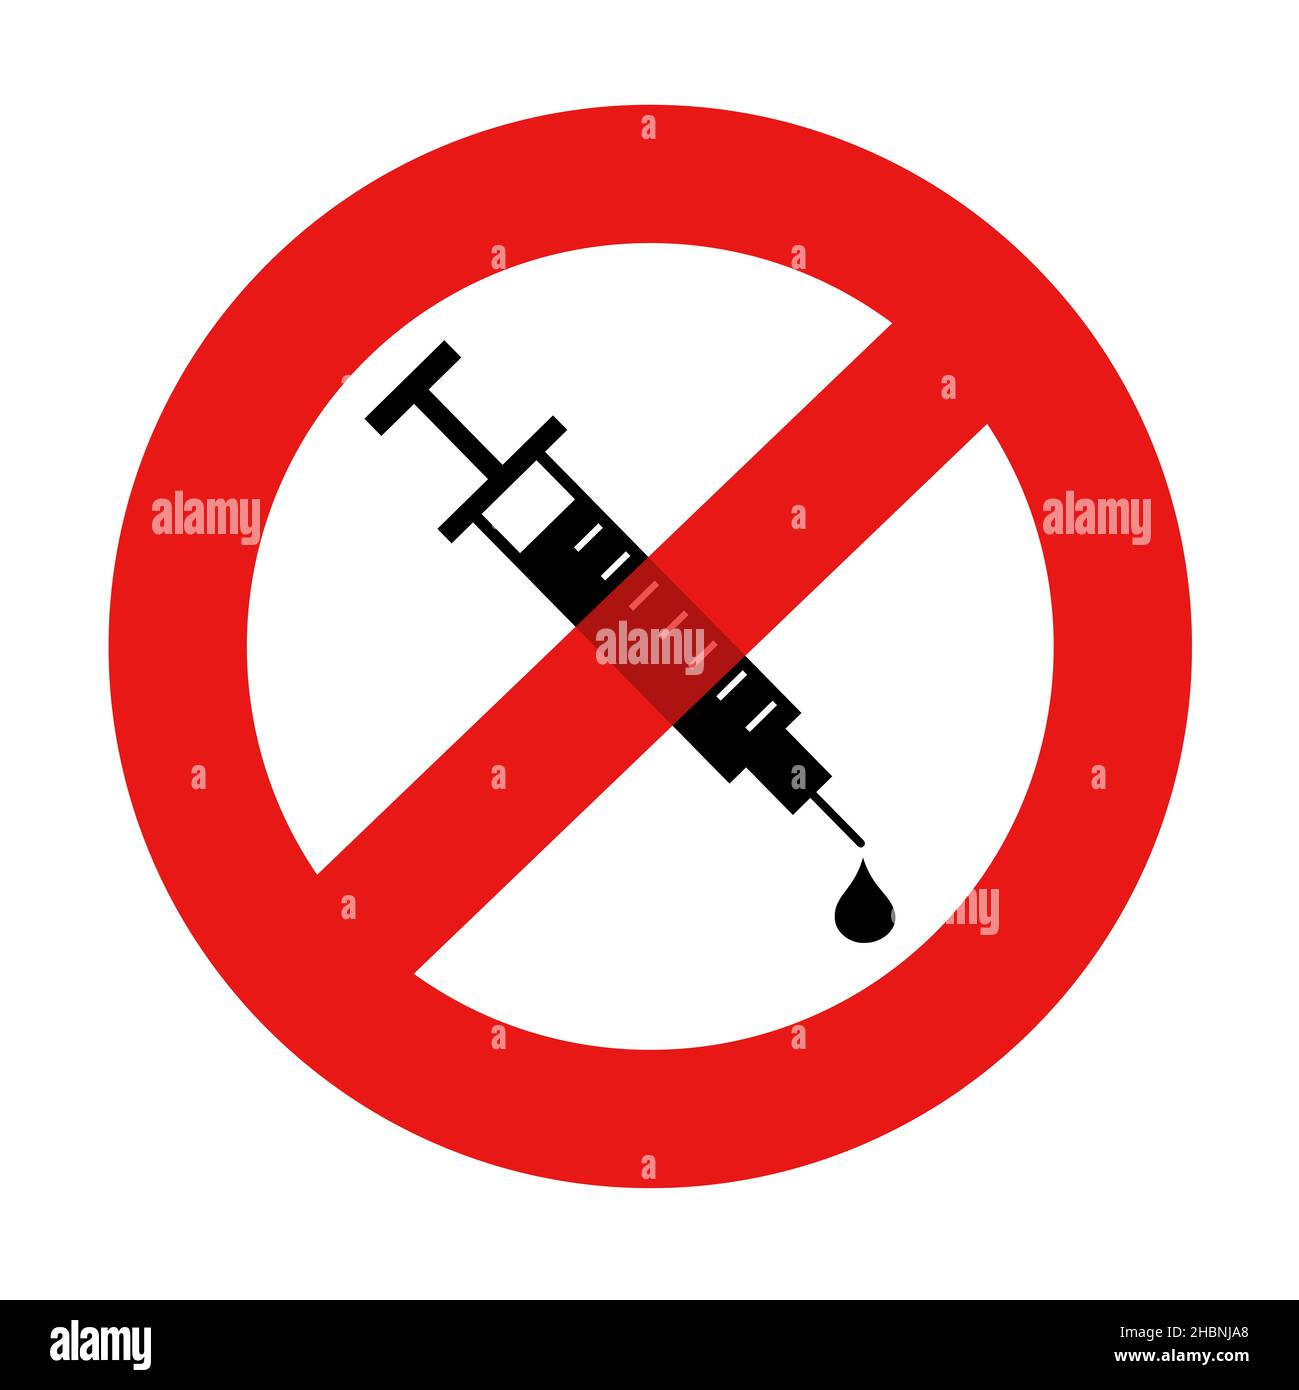 Anti-vax - Spritze mit Impfstoff zur Impfung ist durchgestrichen. Anti-Vaxxer Negative Ablehnung und Ablehnung. Vektorgrafik isoliert auf Weiß. Stockfoto